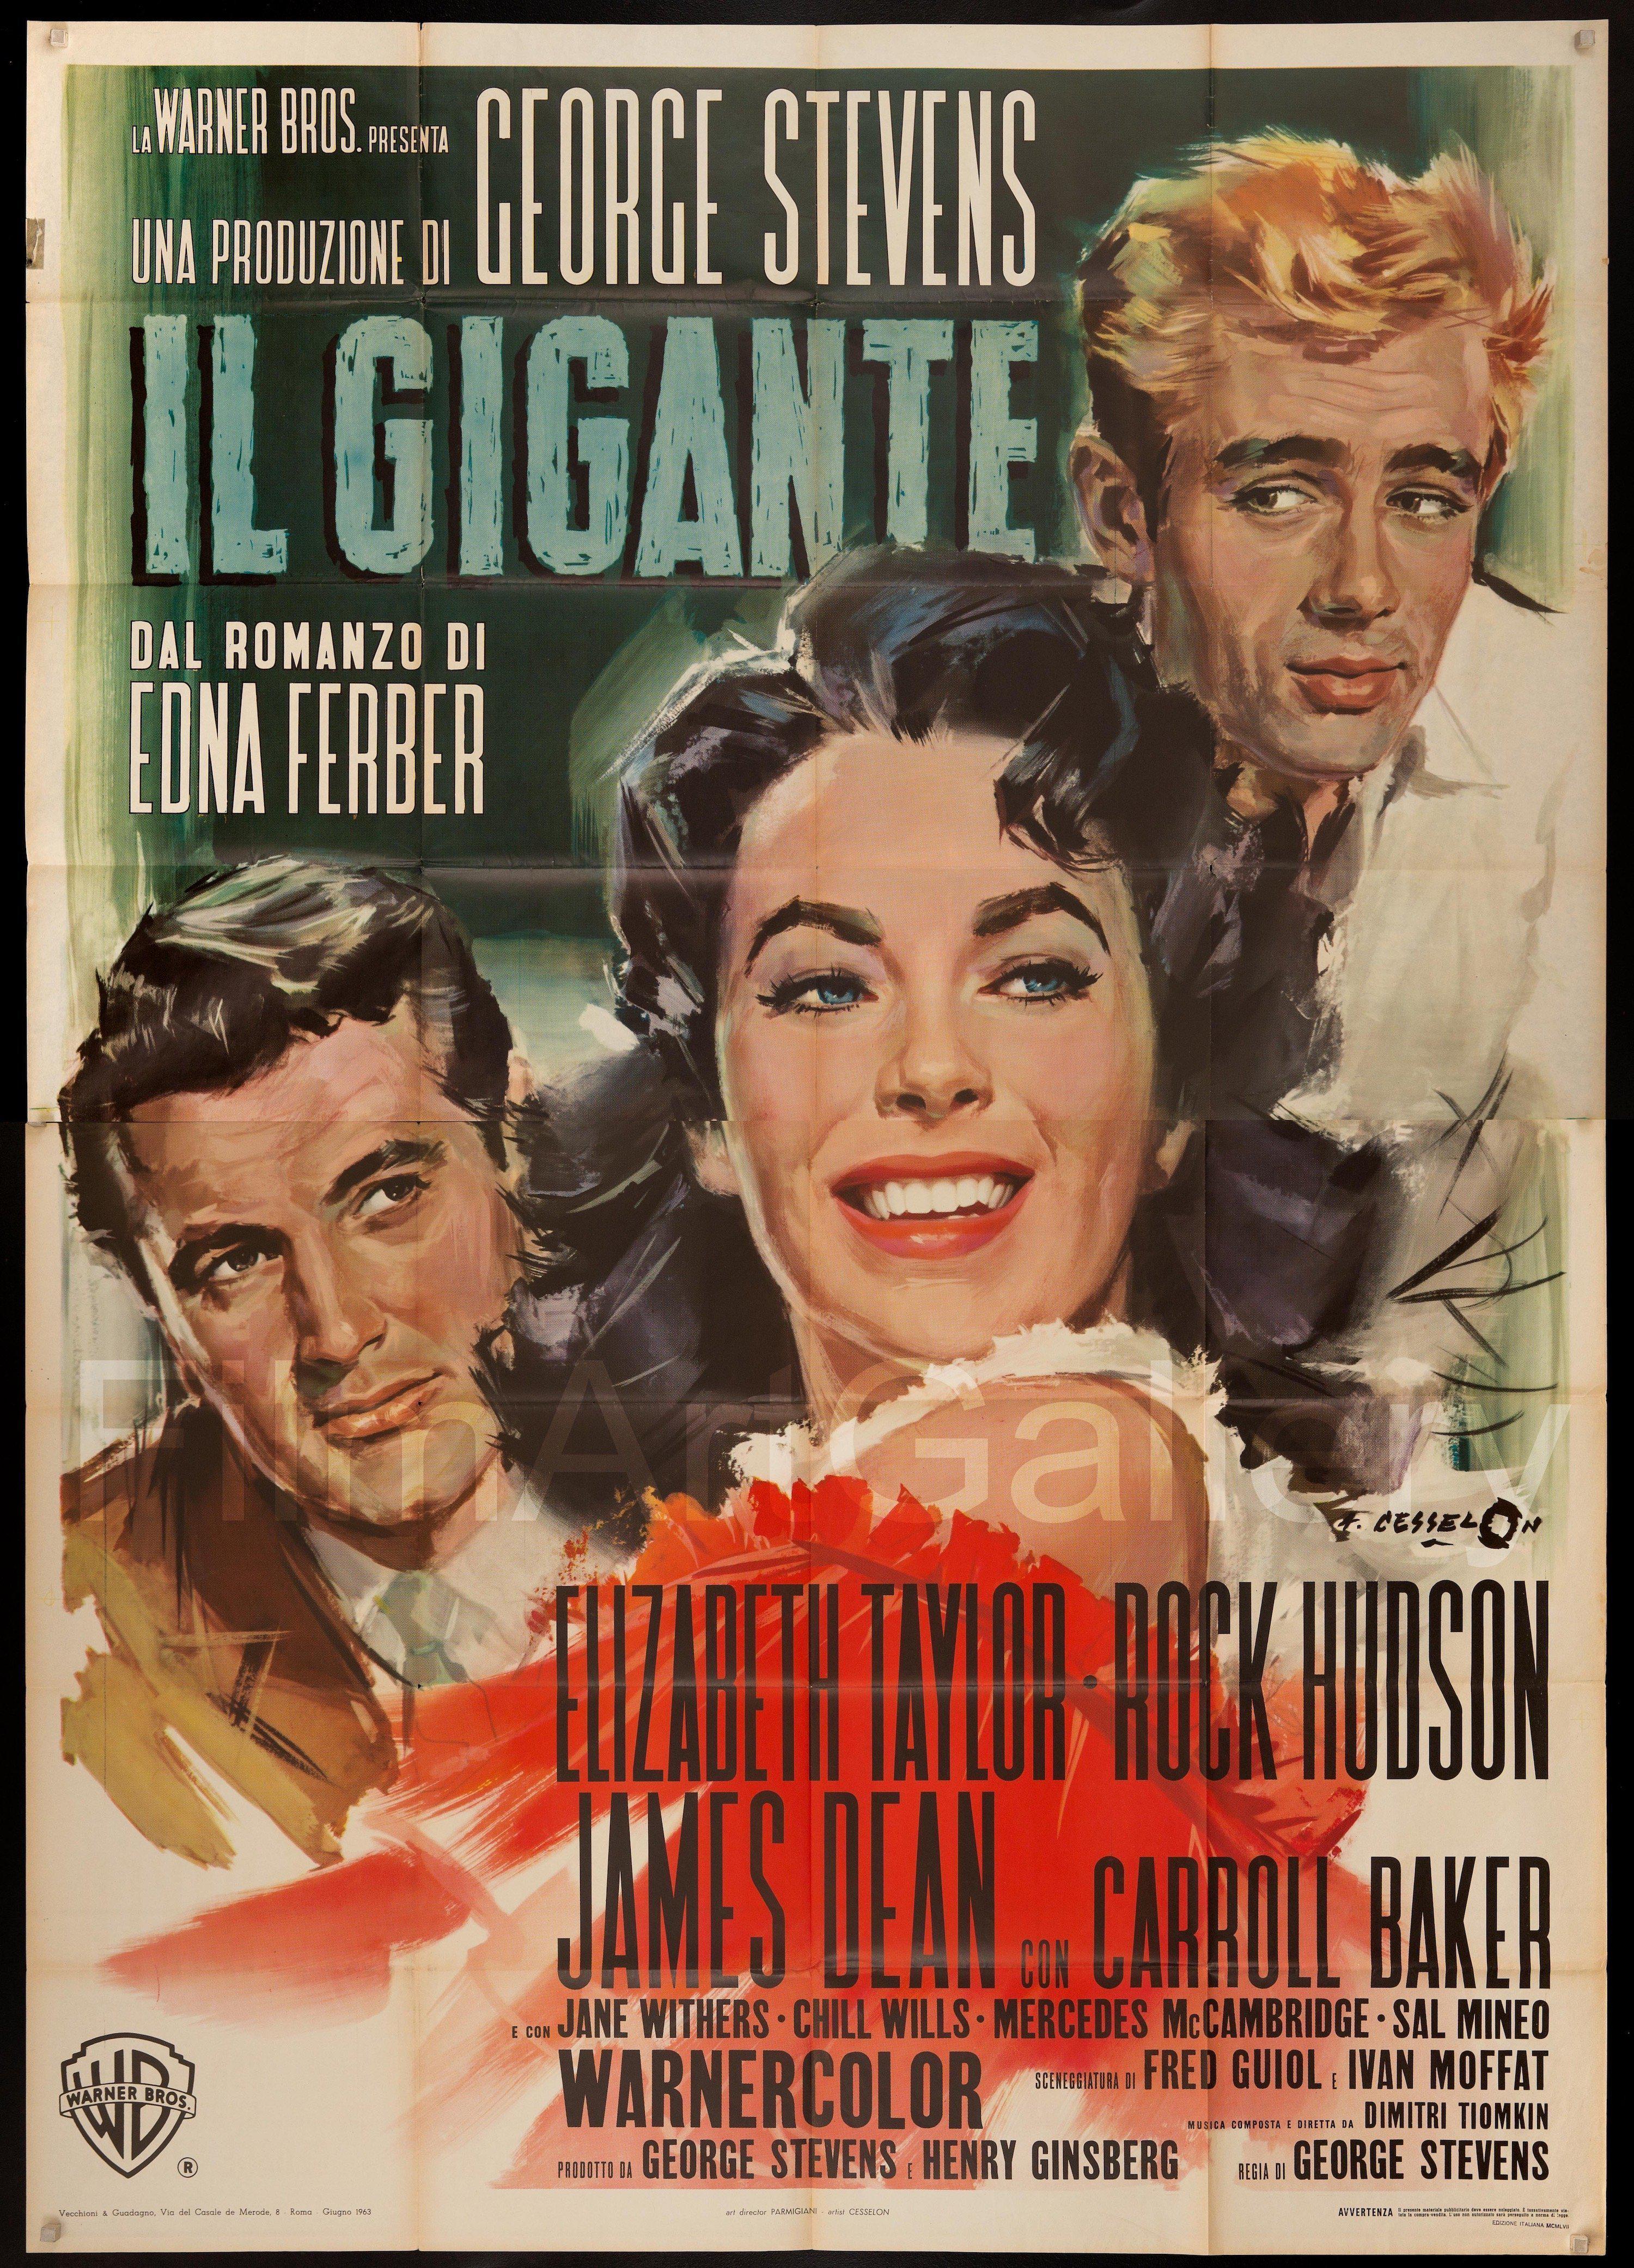 Italian Movie Poster Sizes at Original Film Art - Original Film Art -  Vintage Movie Posters